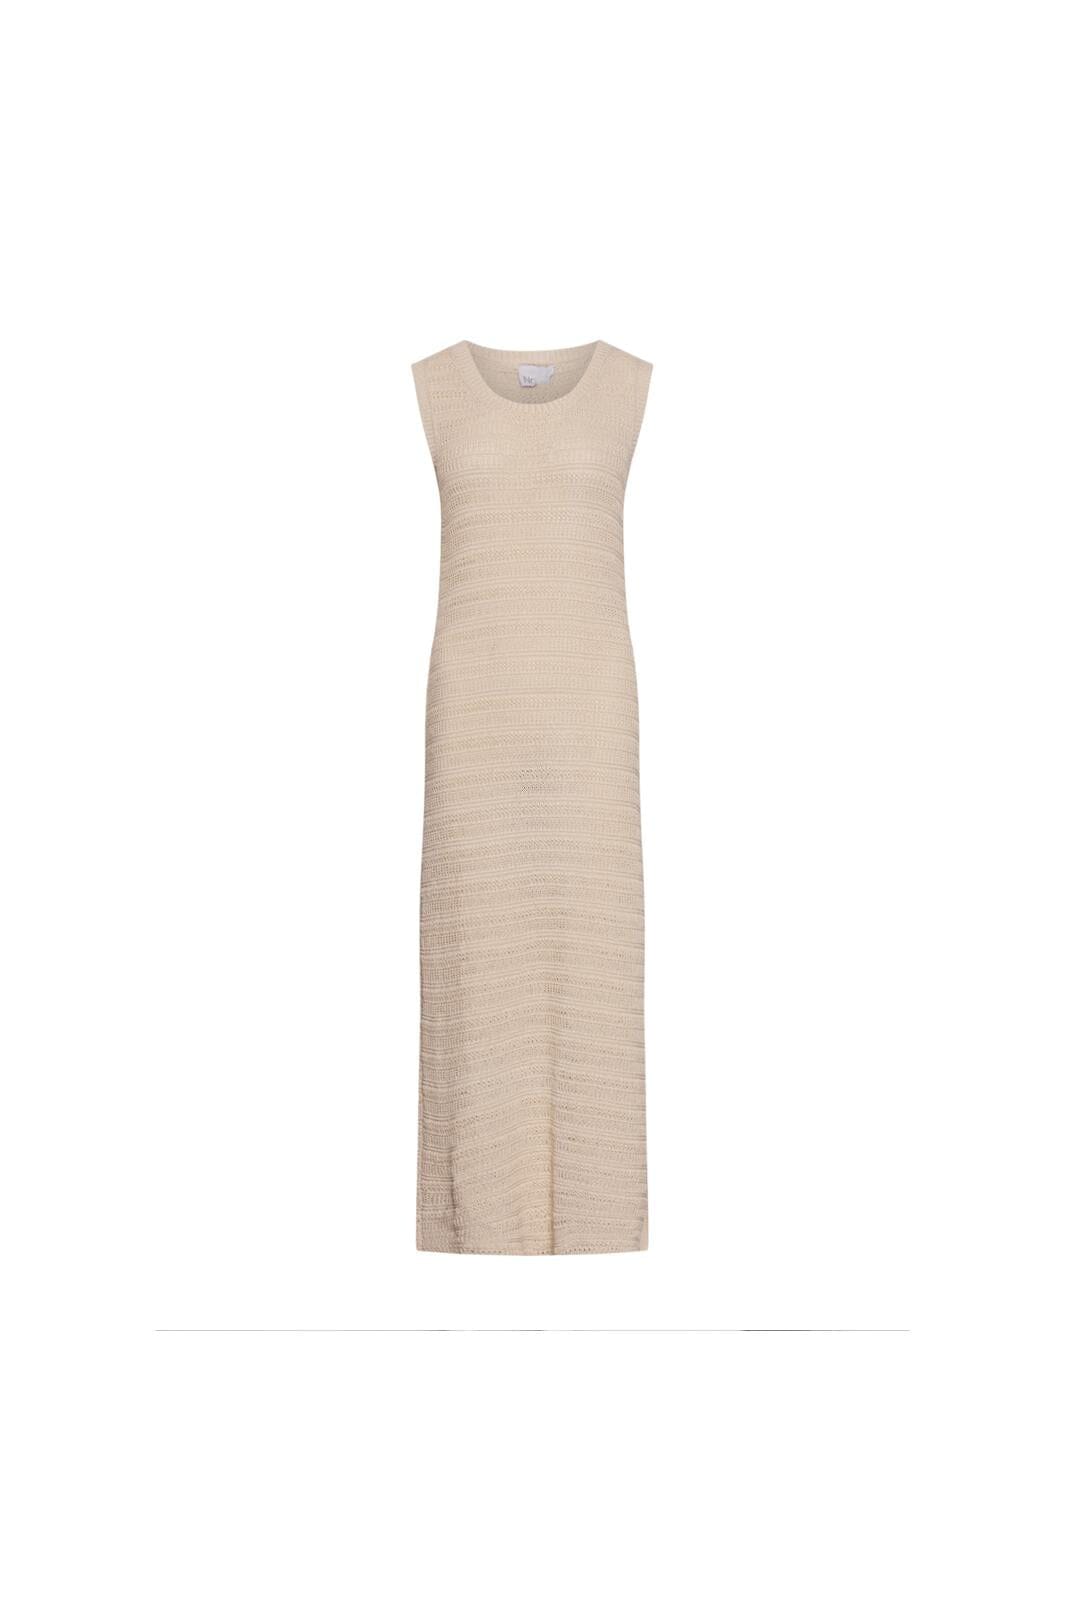 Noella - Shira Knit Dress - 974 Ivory